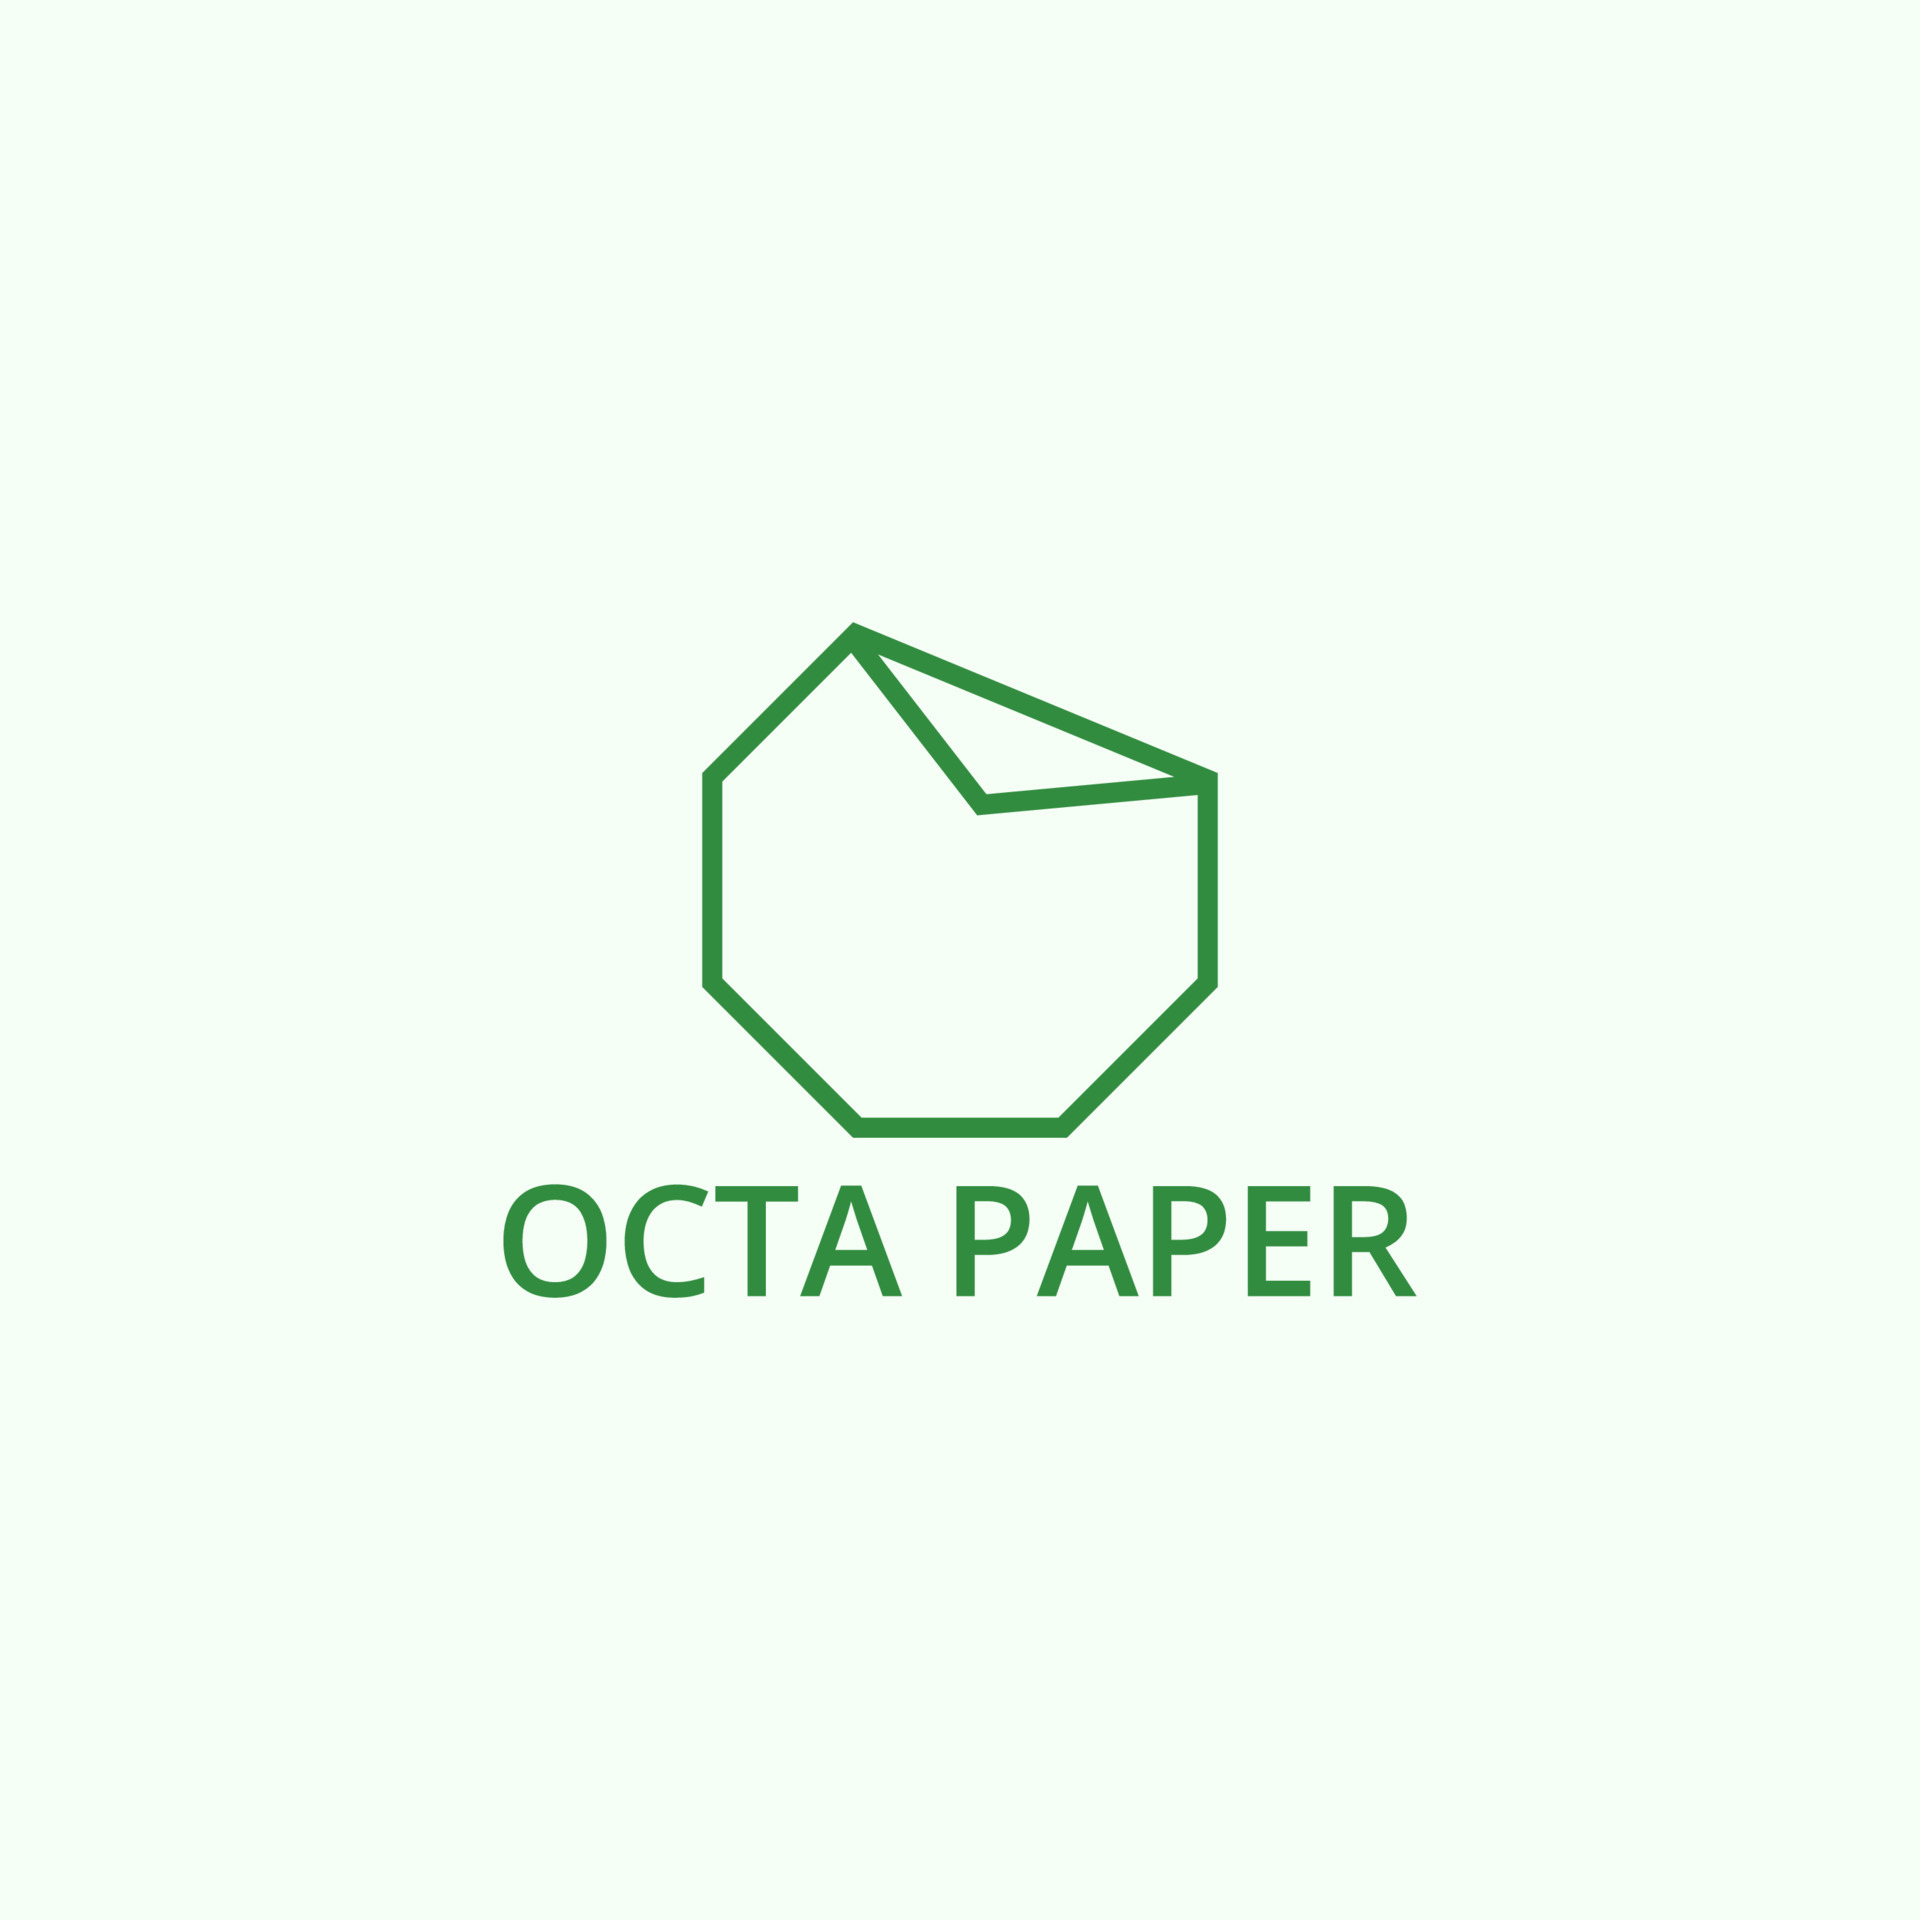 une plié papier logo cette a un octogonal forme. 21953300 Art vectoriel  chez Vecteezy